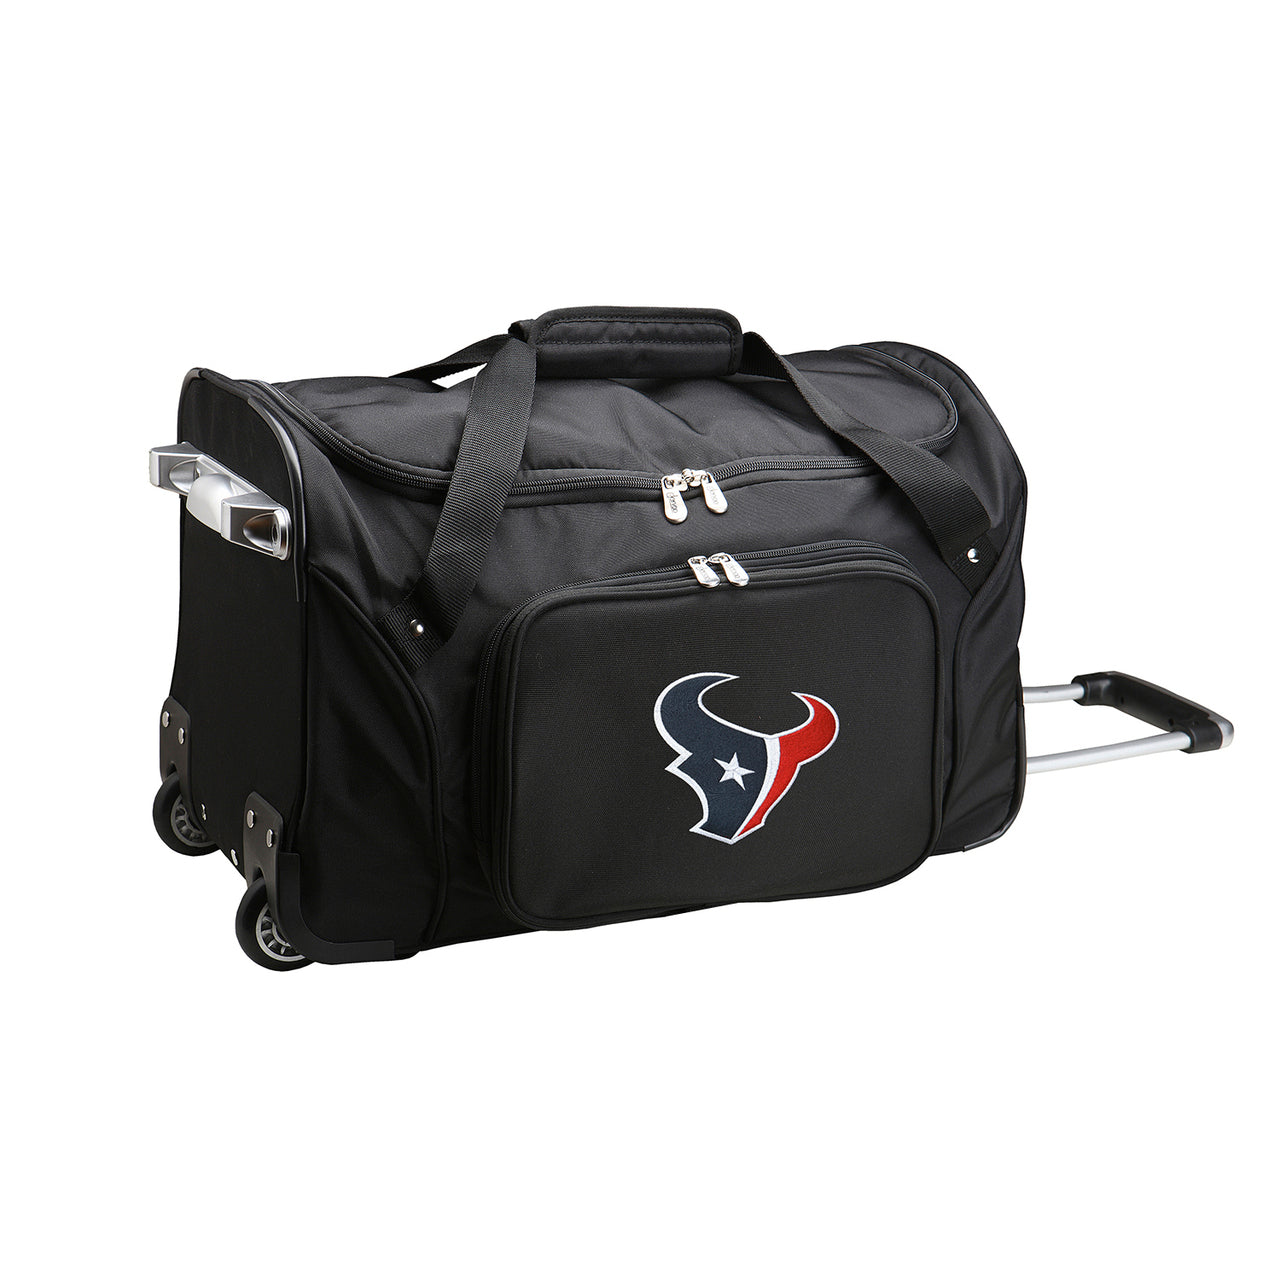 NFL Houston Texans Luggage | NFL Houston Texans Wheeled Carry On Luggage